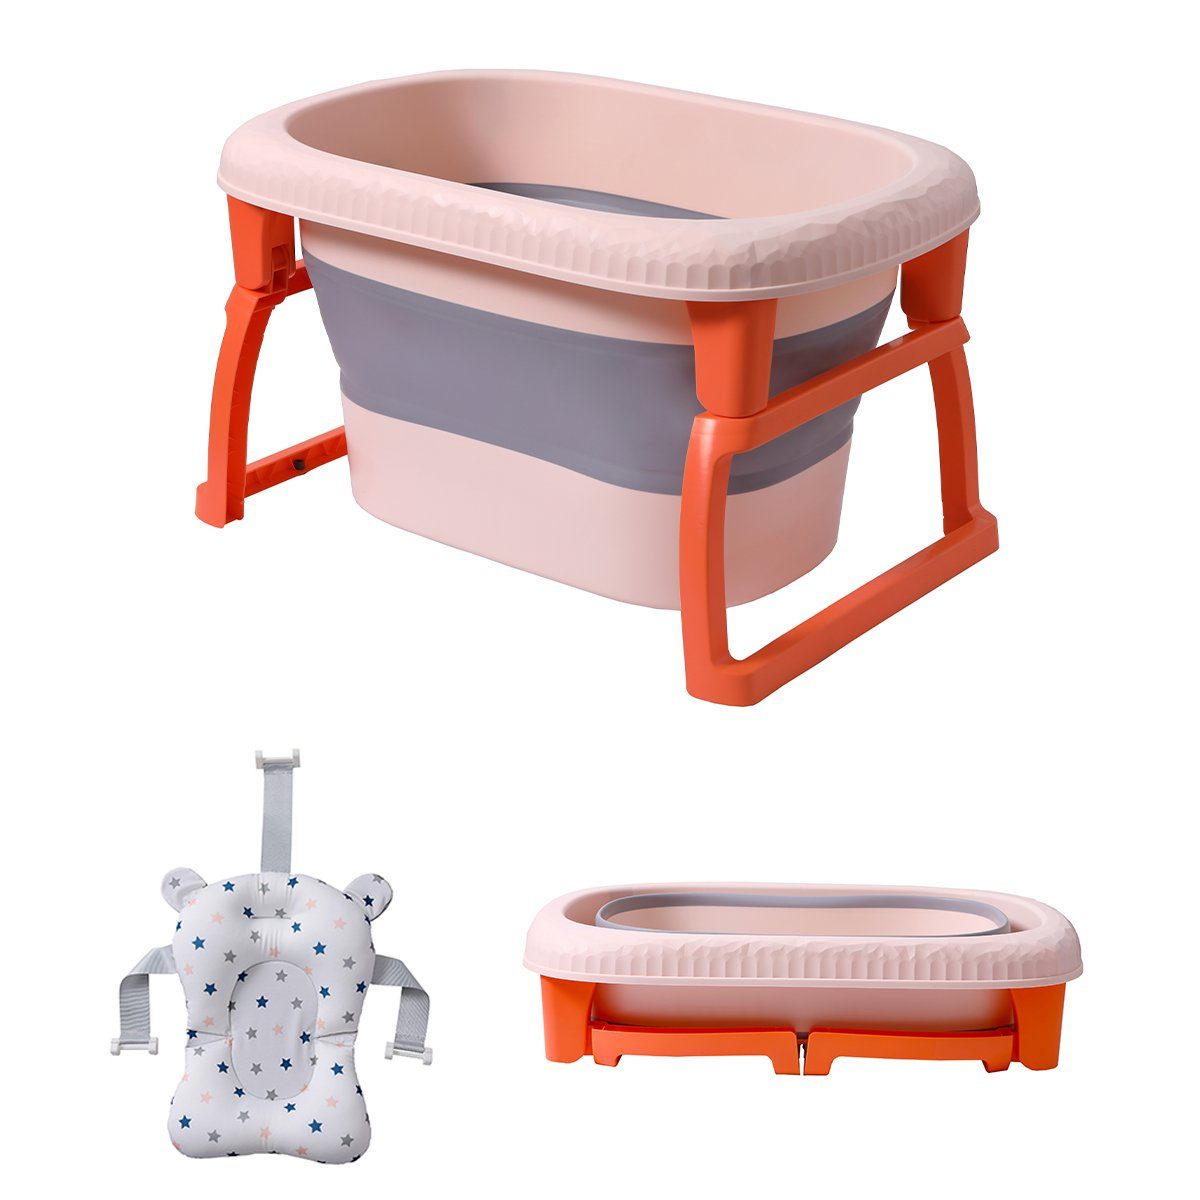 Seven Comfort Babybadewanne Faltbare Badewanne für Kinder, (Tragbare Badewanne für Dusche, Kinder Summer Schwimmbad), Faltbar 3-in-1 Wanne mit Badewannensitz und Duschrille für 0-6 Jahre orange